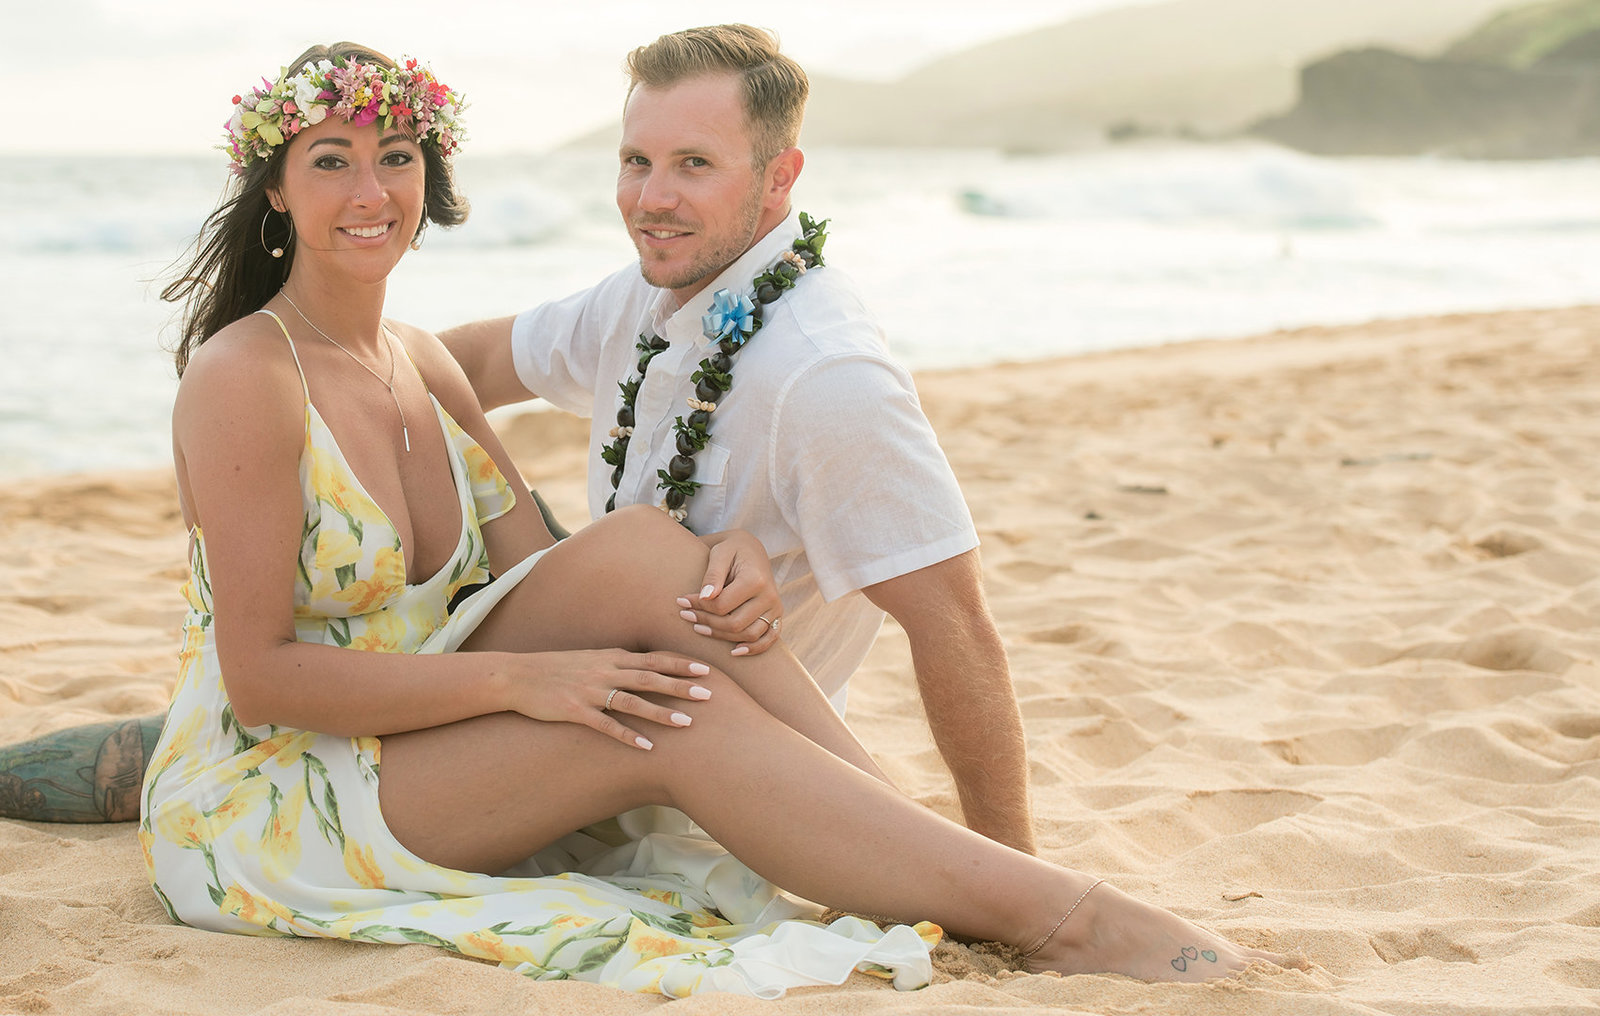 Engagement photographers on Oahu